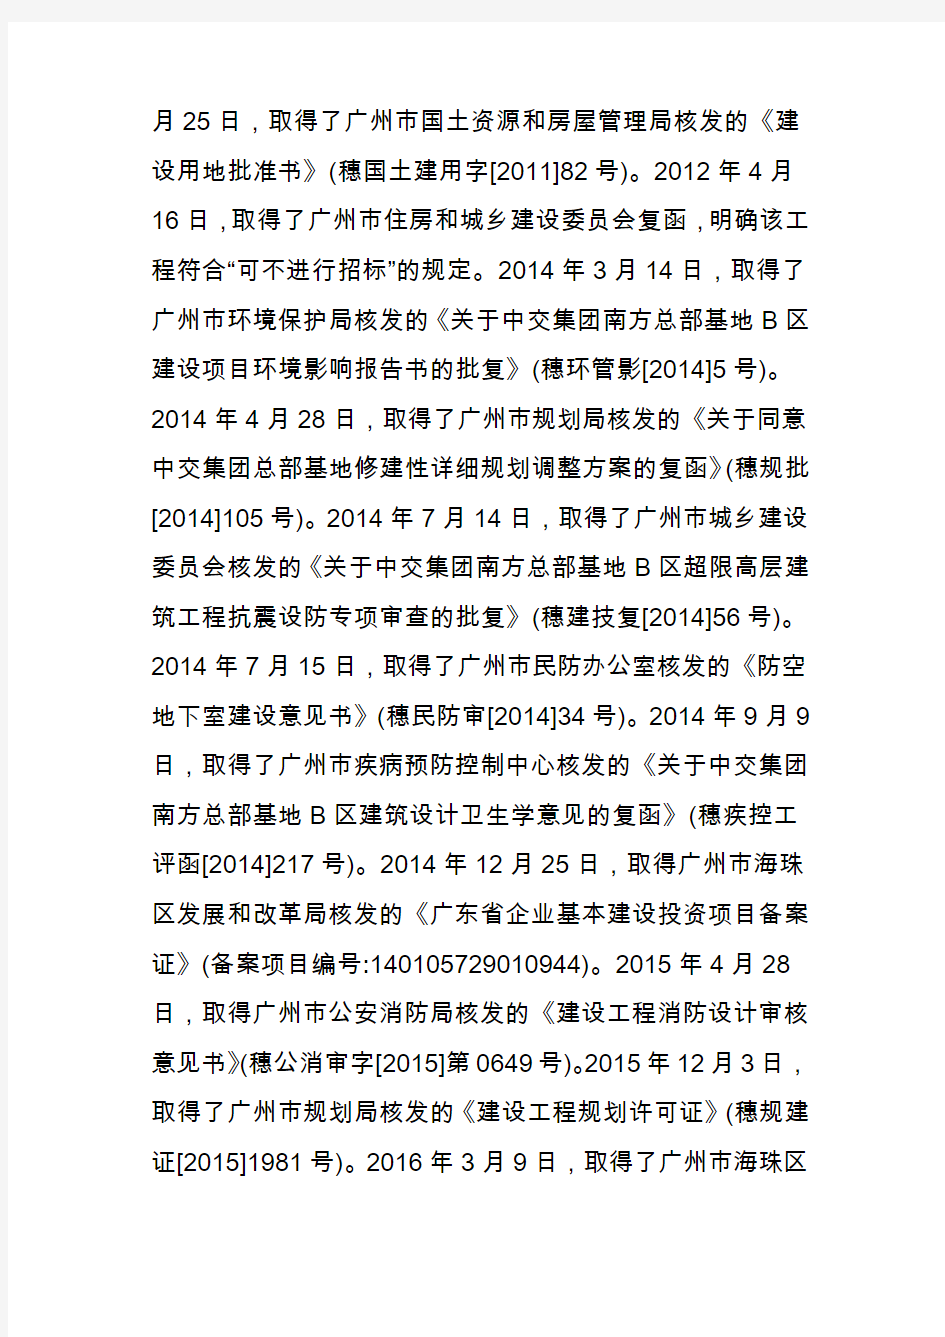 【事故报告】 53人被追责!广州市海珠区中交集团南方总部基地b区项目“722”塔吊坍塌较大事故调